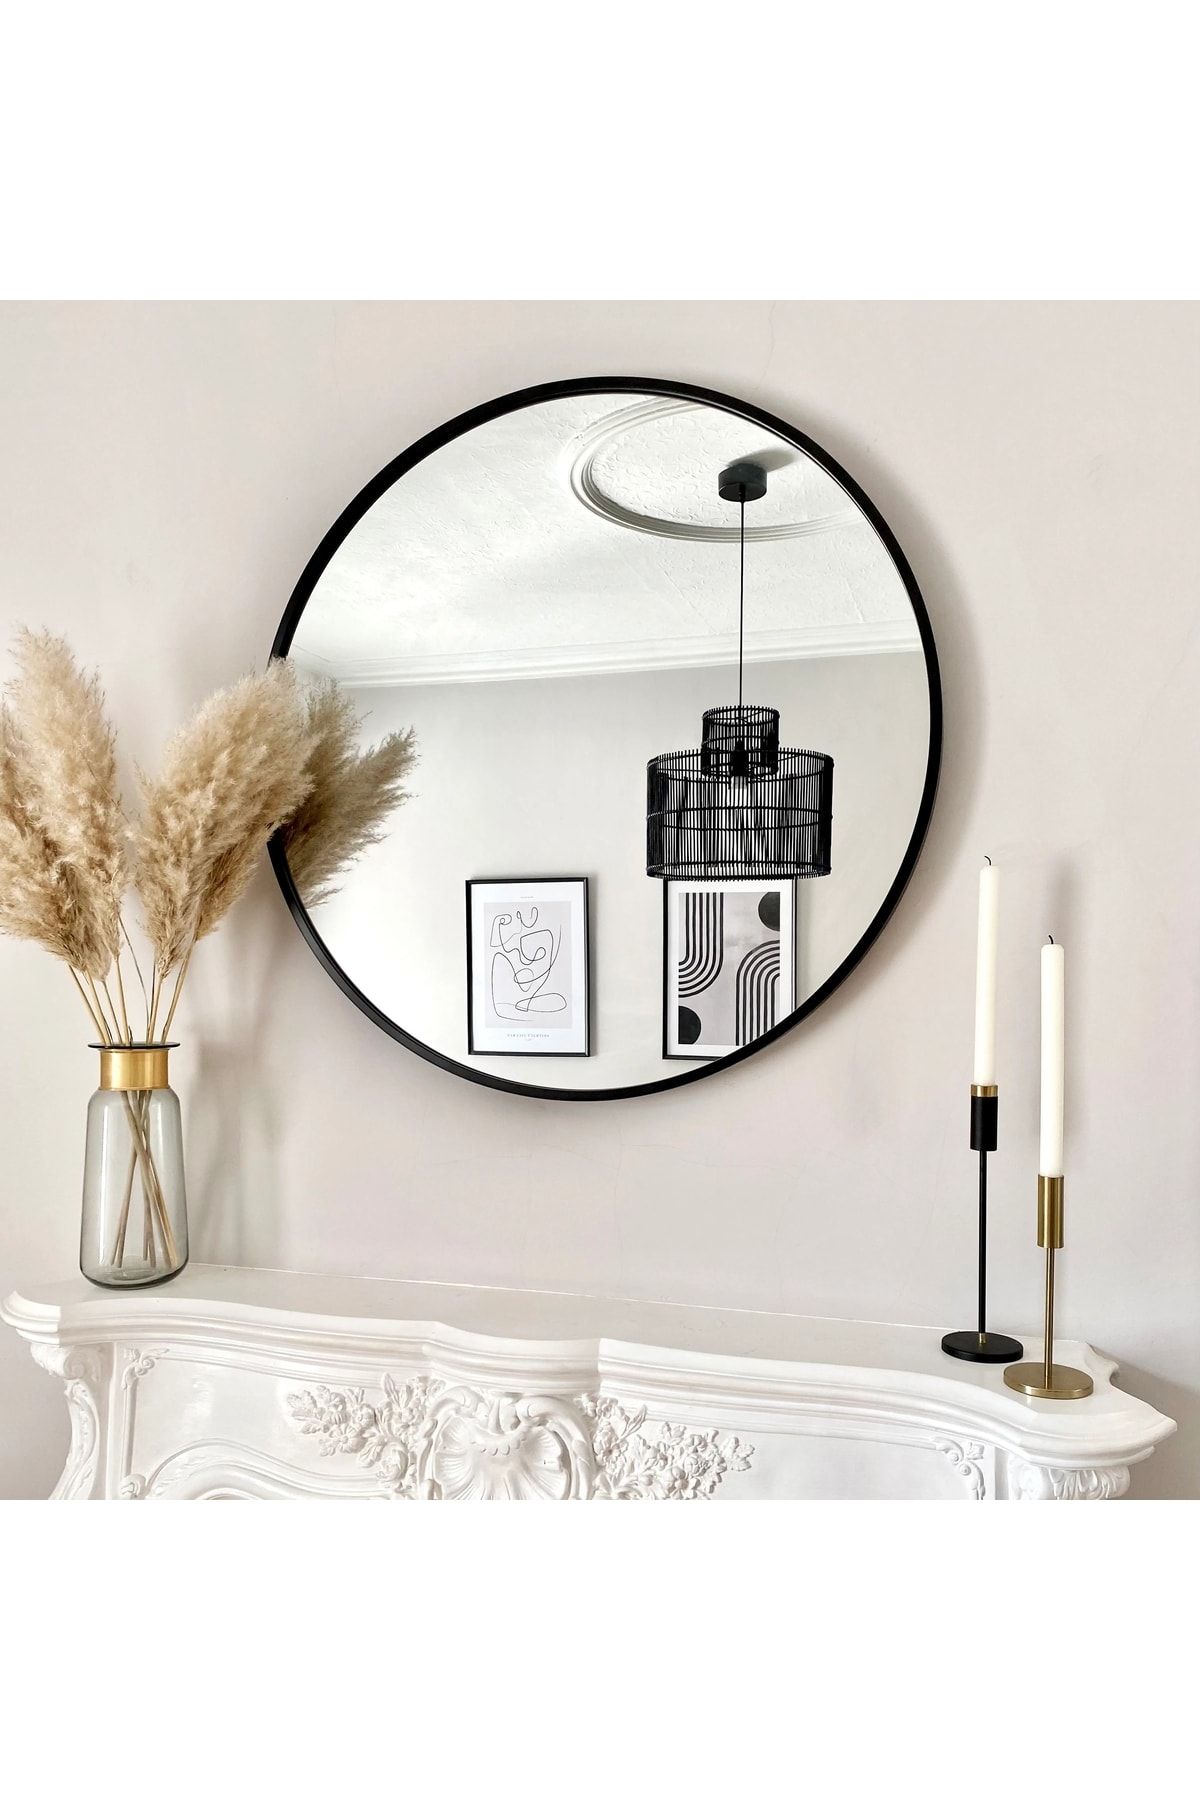 FLORADESİGN Ayna / Dekoratif Ayna / Yuvarlak Ayna / Banyo Ayna / Makyaj Ayna / Duvar Ayna / Flora Roma (SİYAH)